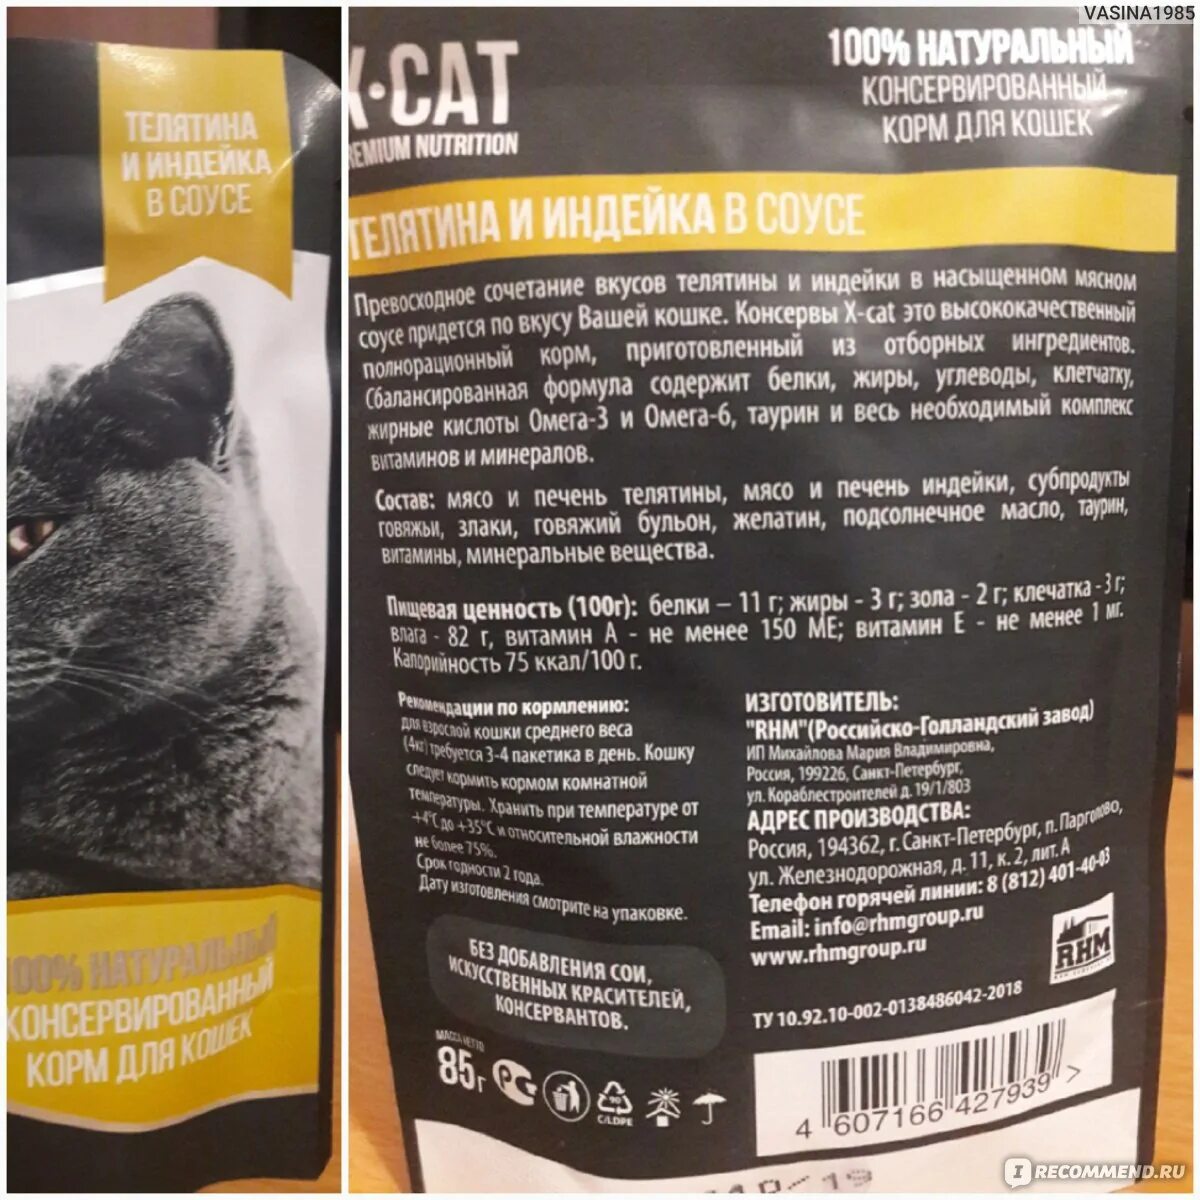 Award влажный корм для кошек. X-Cat корм. Состав корма x-Cat. Корм для кошек белорусского производства. Корм для кошек черная упаковка.